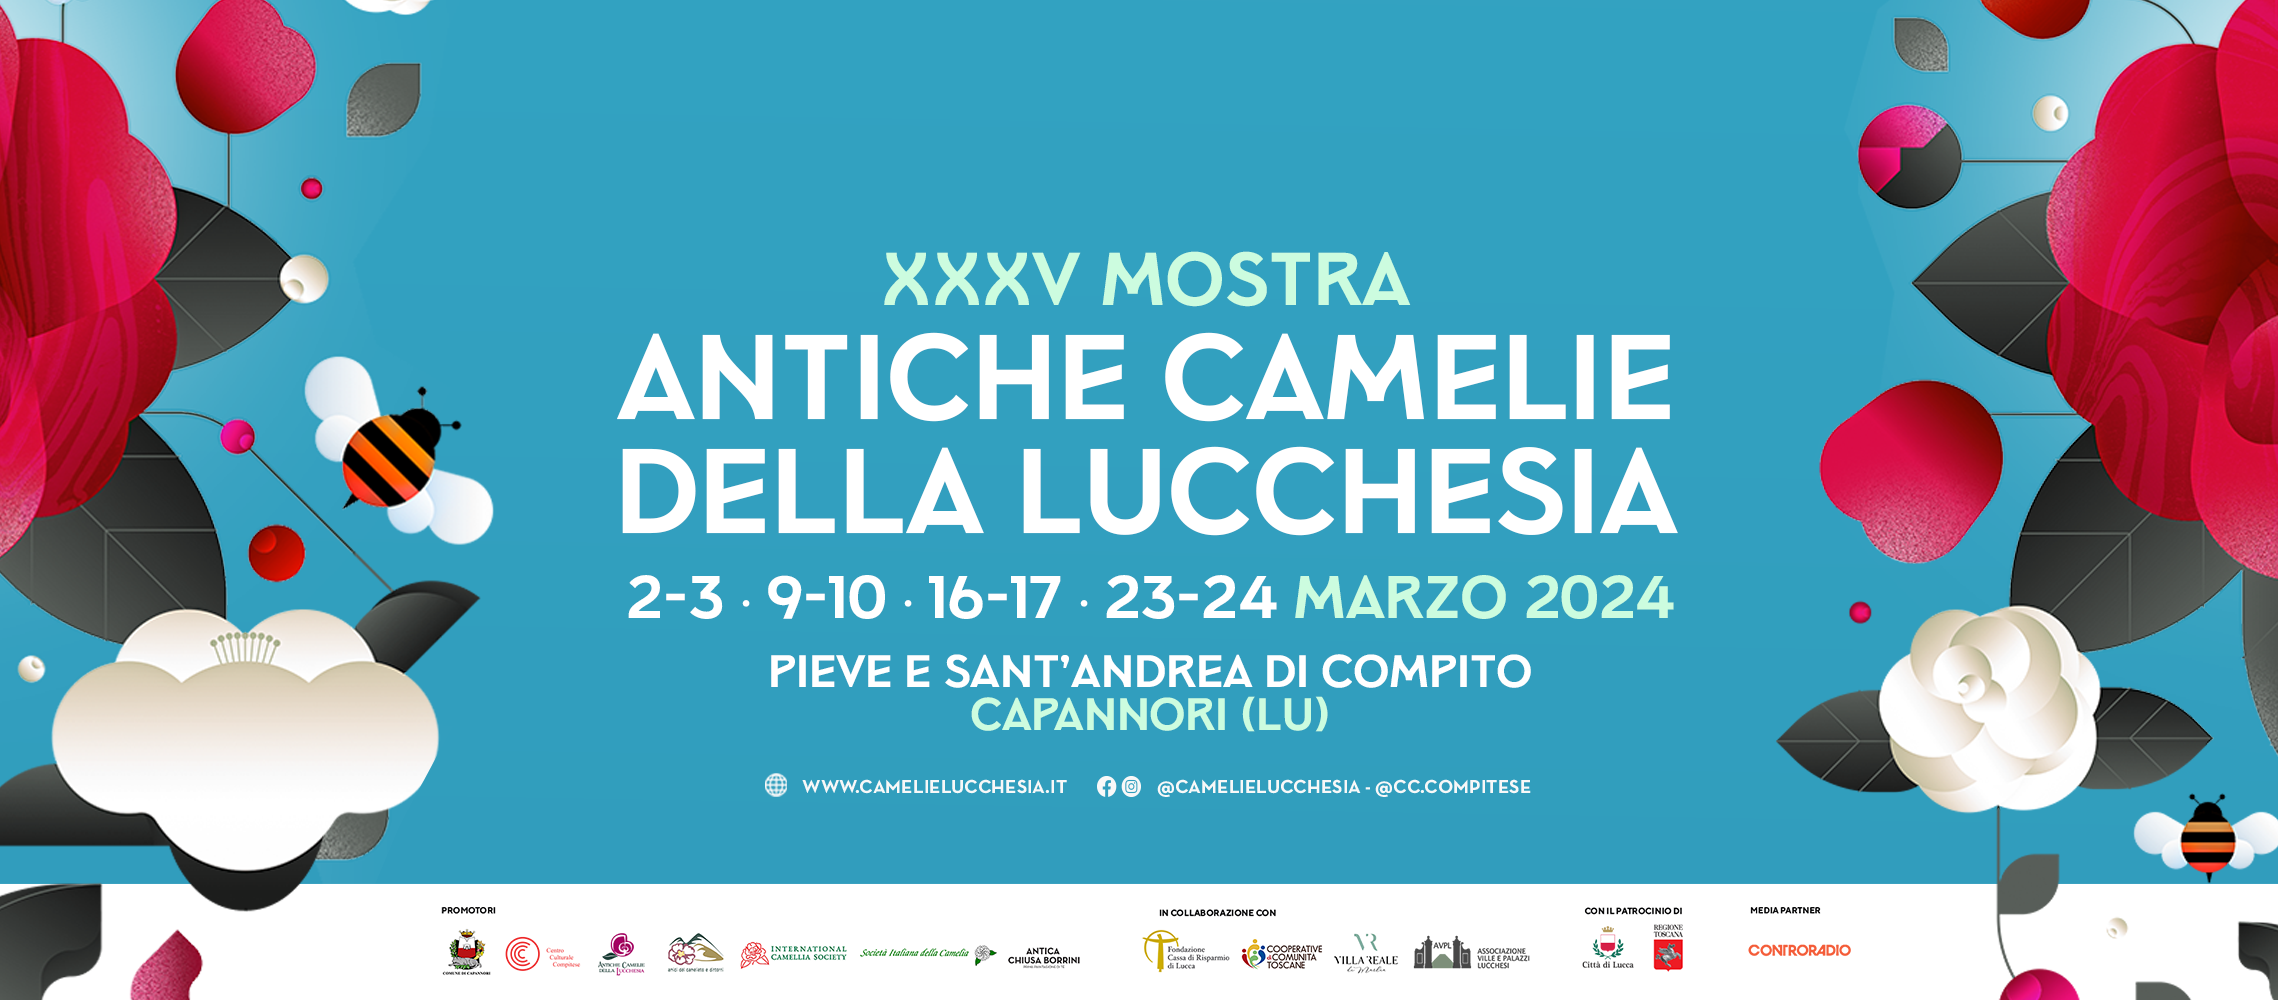 XXXV Mostra Antiche camelie della Lucchesia, marzo 2024